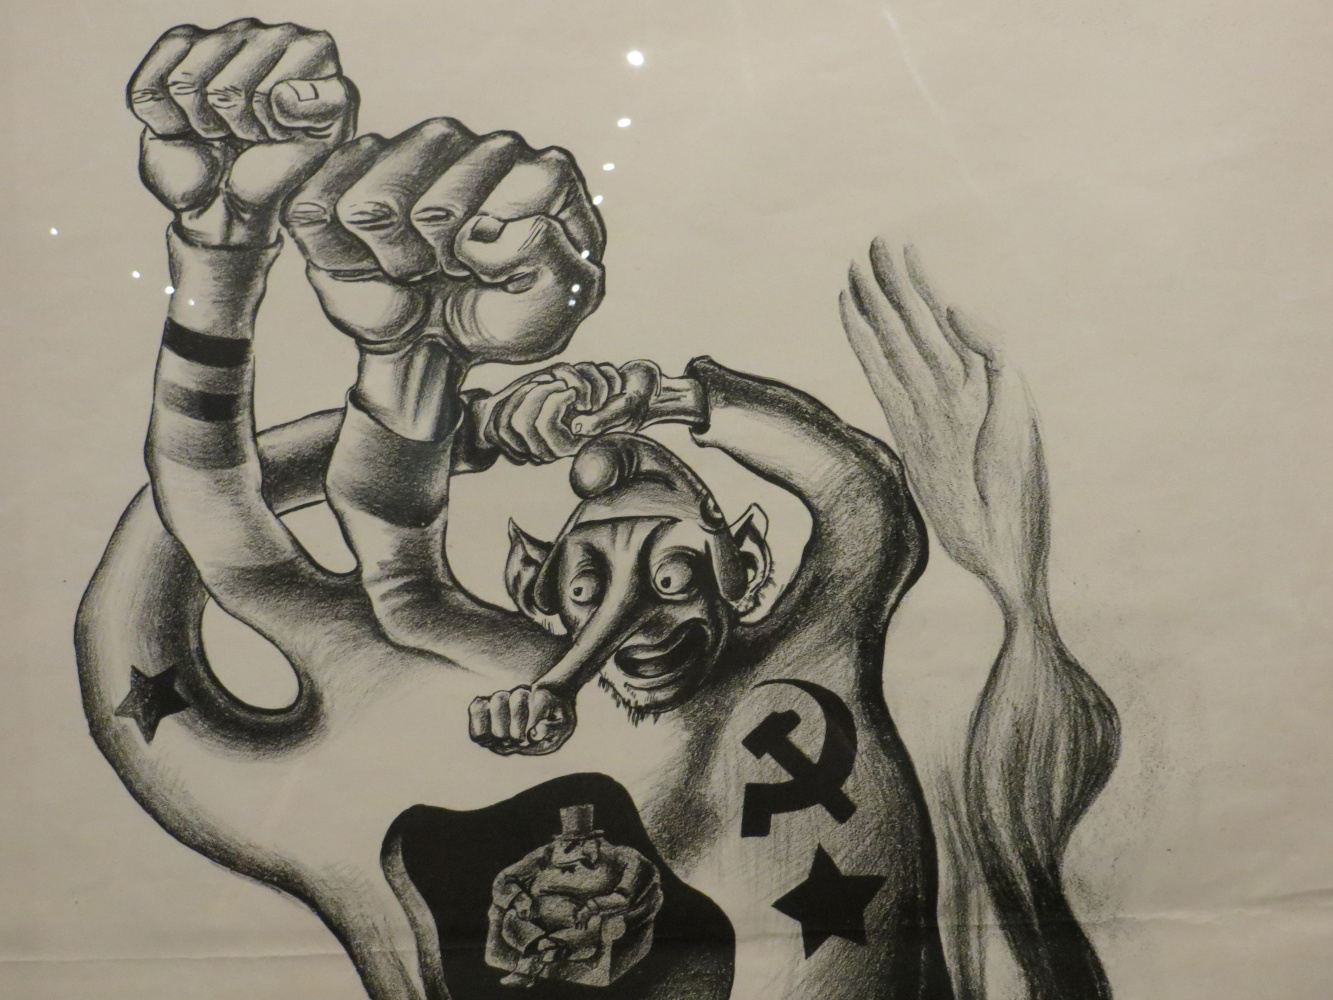 Это Мексика! Политические карикатуры участника покушения на Троцкого - в Одесском музее